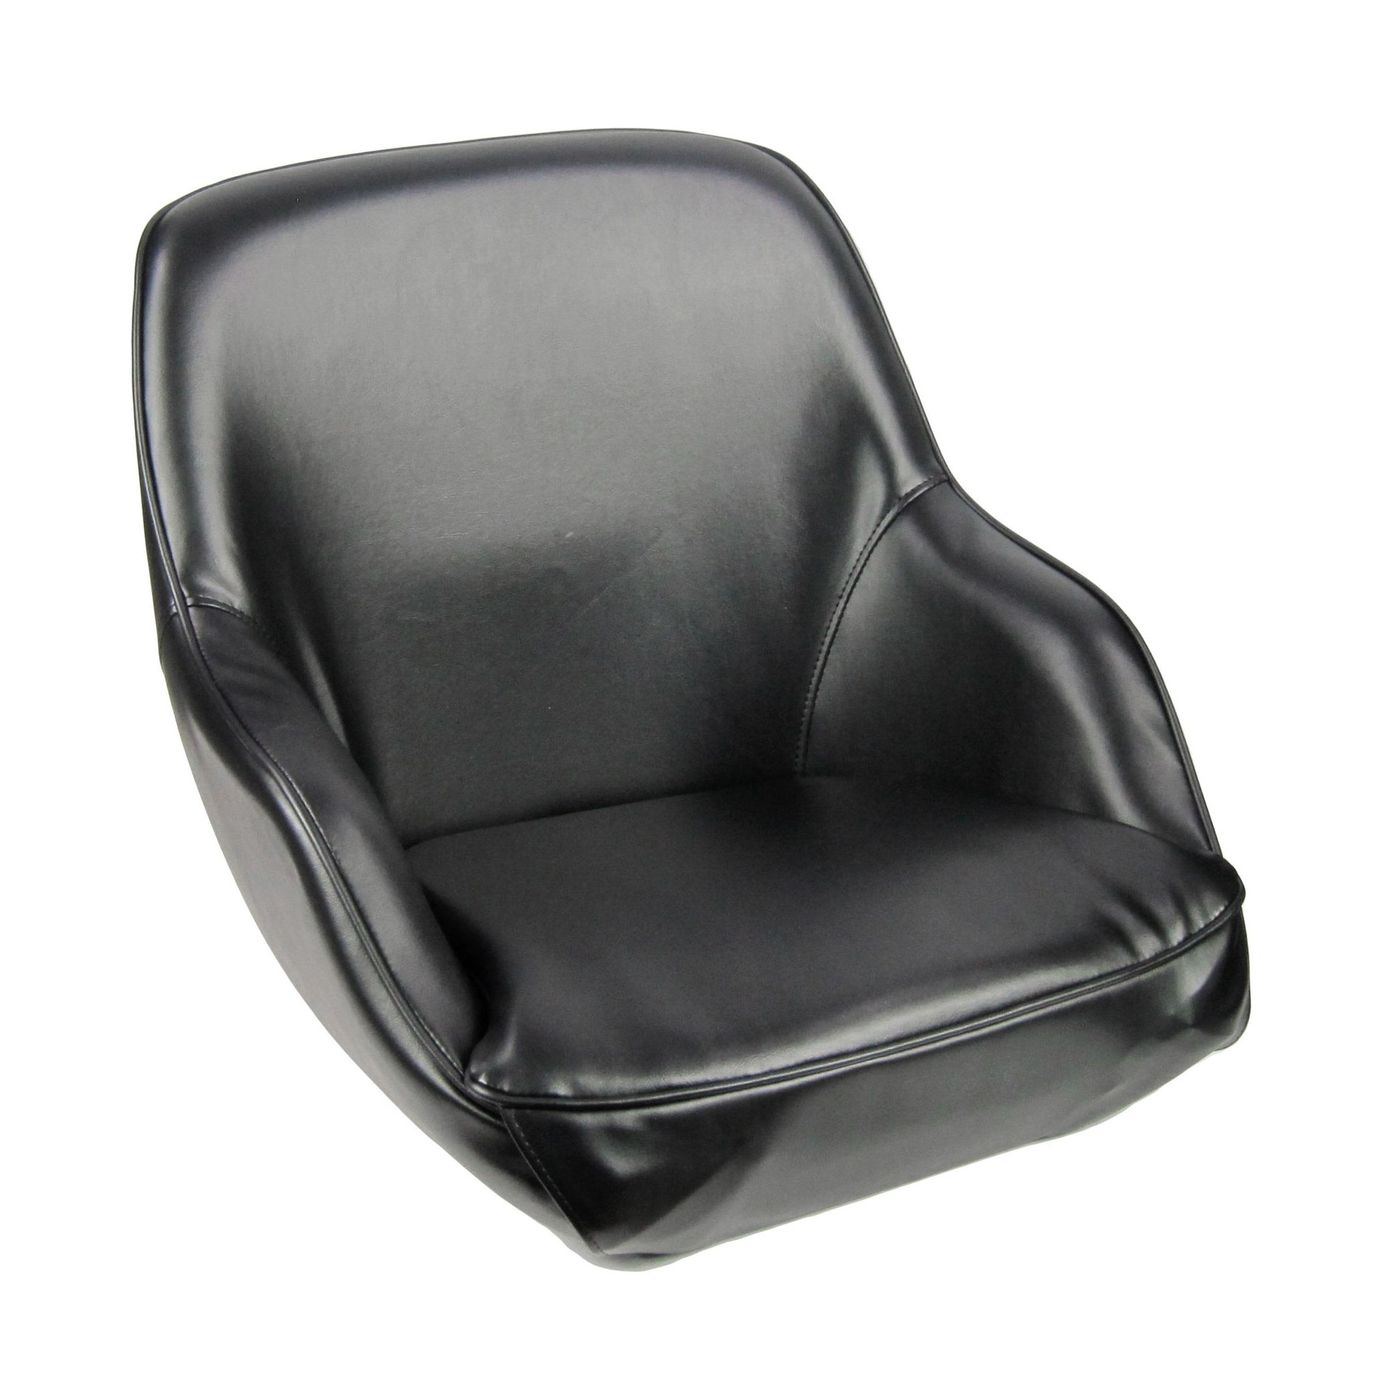 Кресло ADMIRAL мягкое, материал черный винил 1061420990 кресло ozark мягкое черный темно серый упаковка из 2 шт 1043224 pkg 2